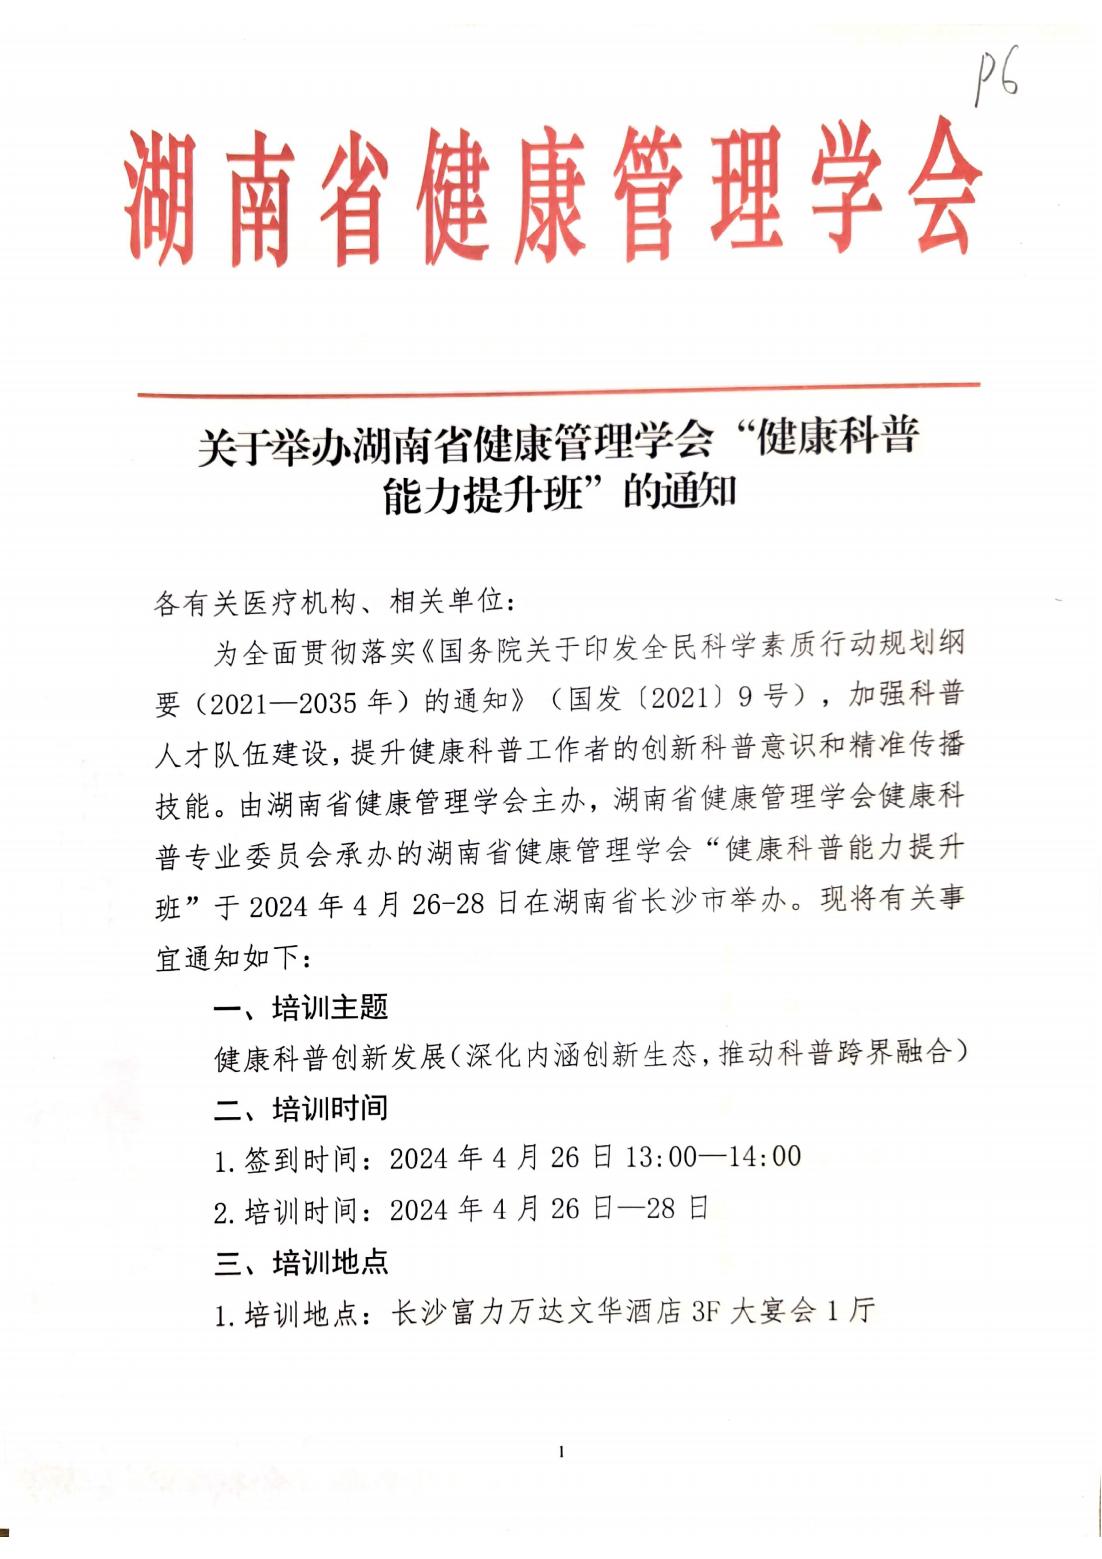 关于举办湖南省健康管理学会“健康科普能力提升班”的通知